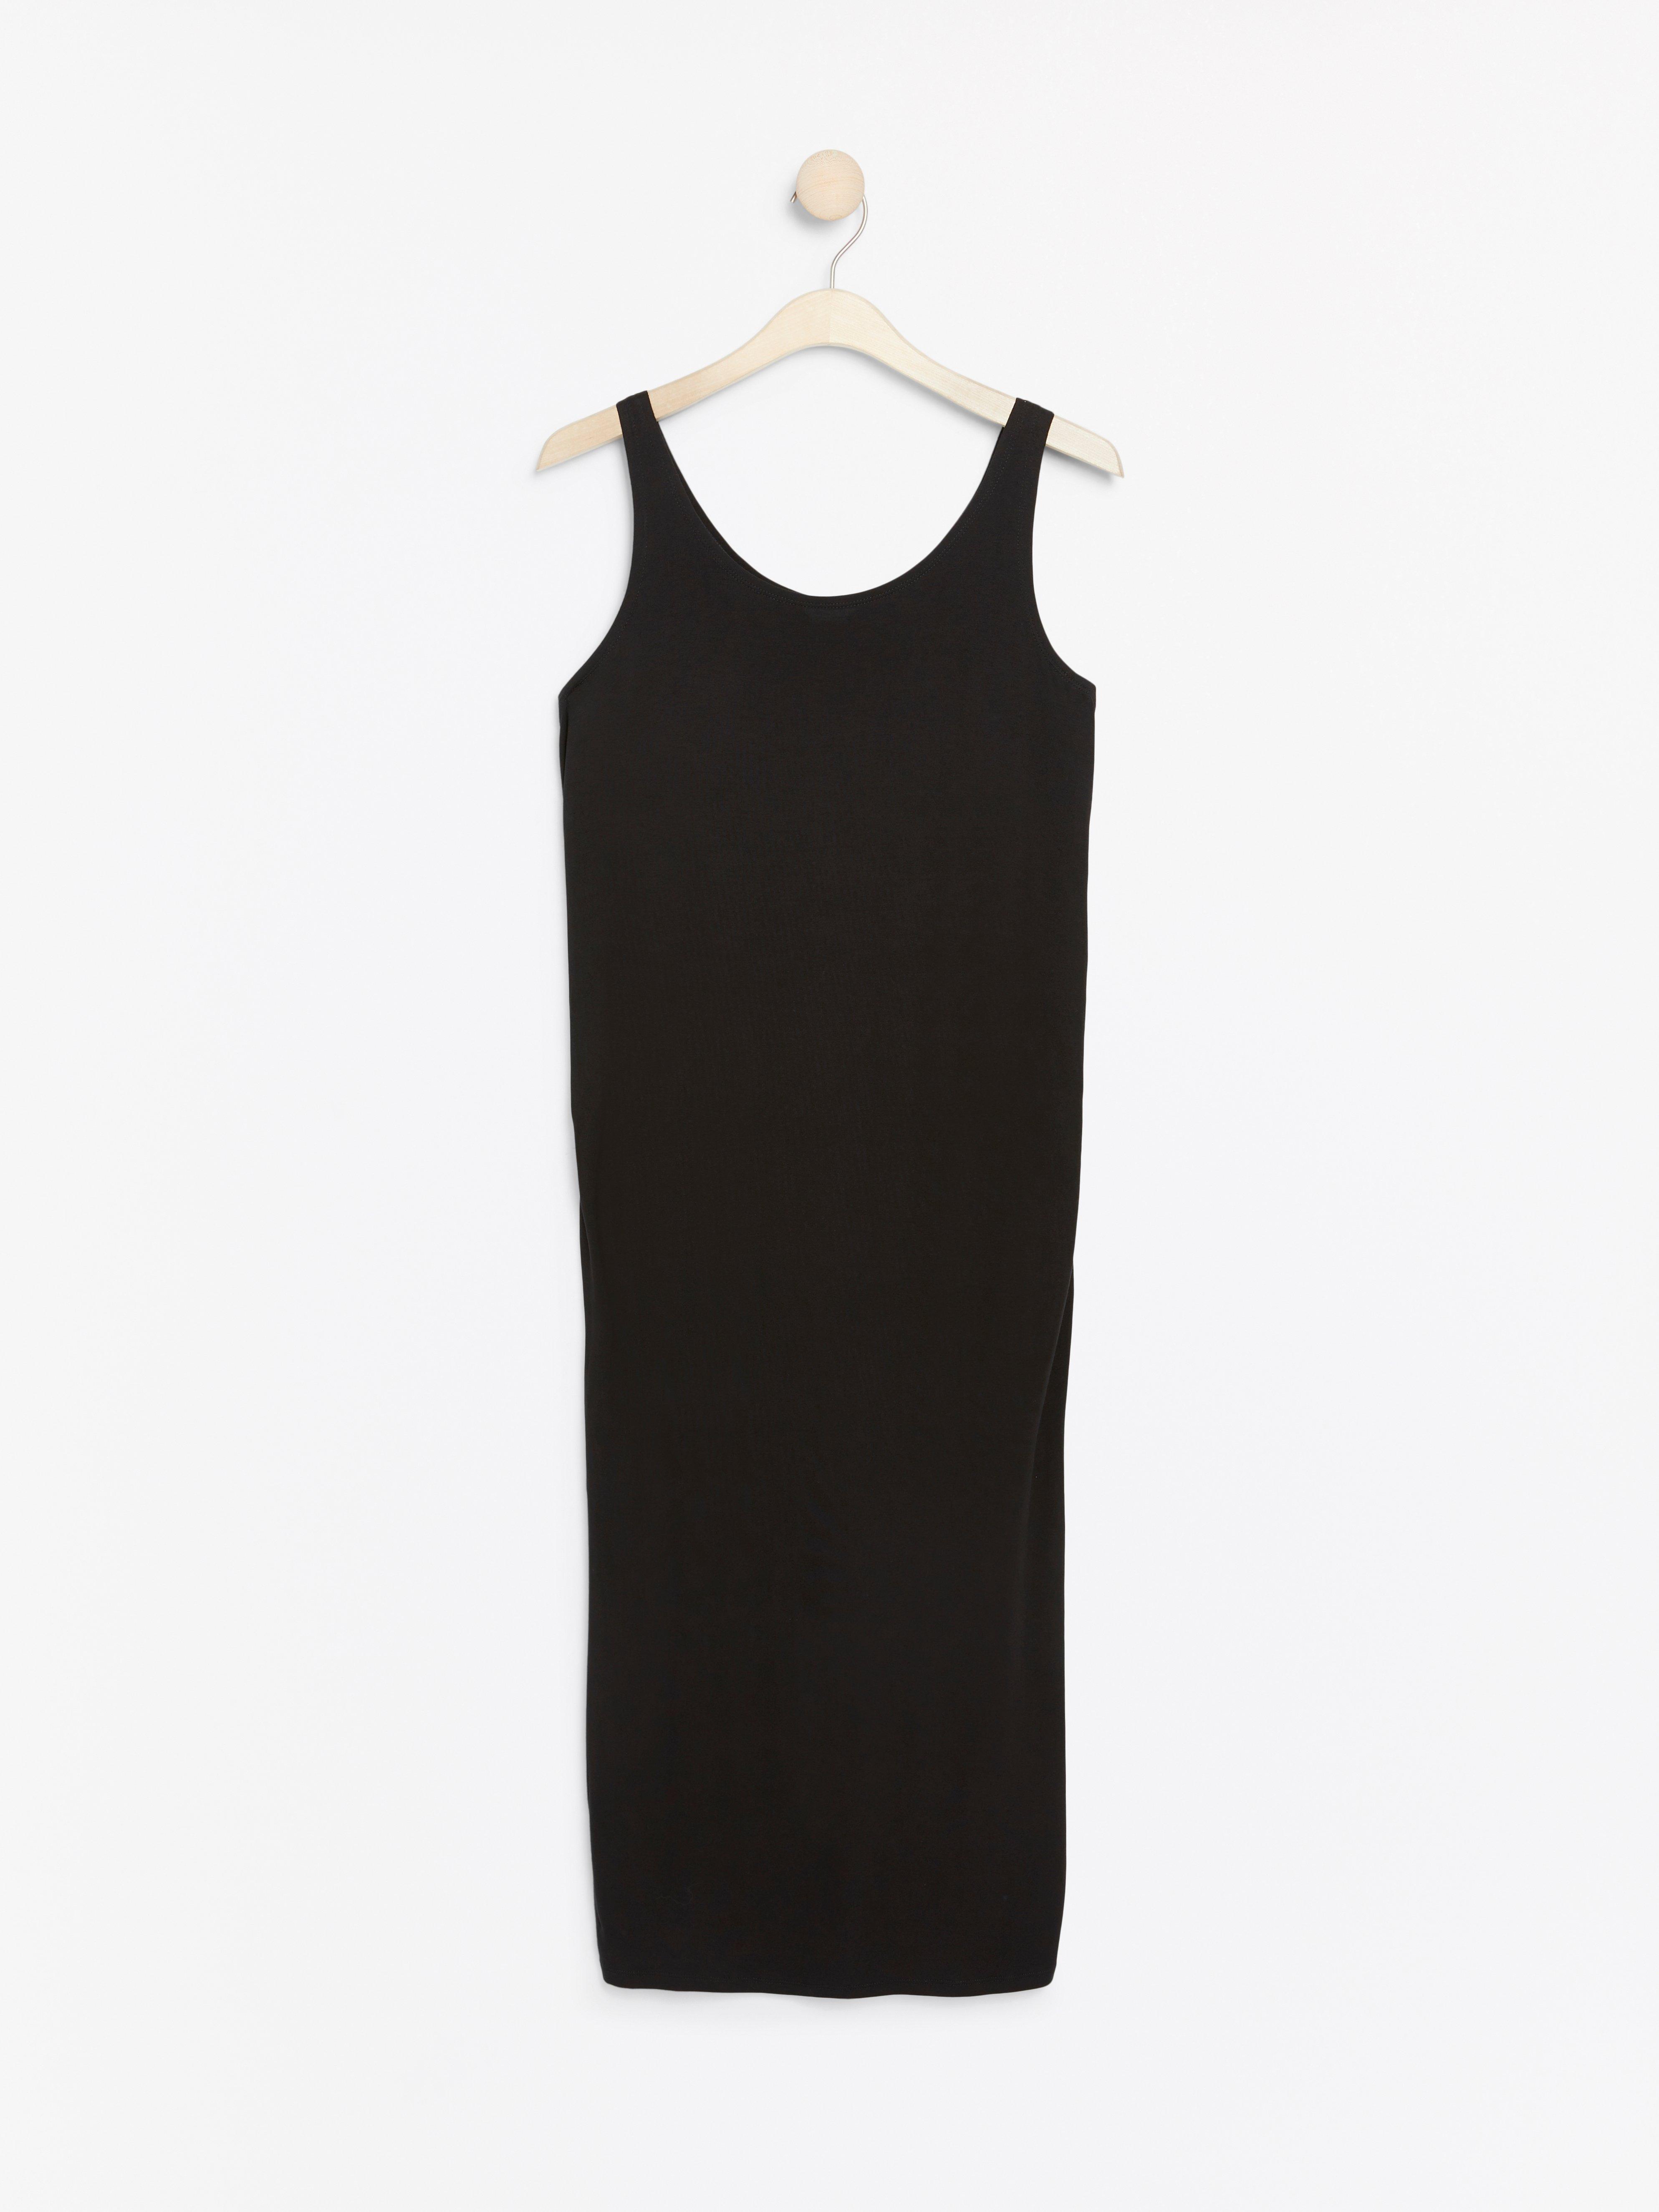 	Ermeløs svart MOM-kjole	